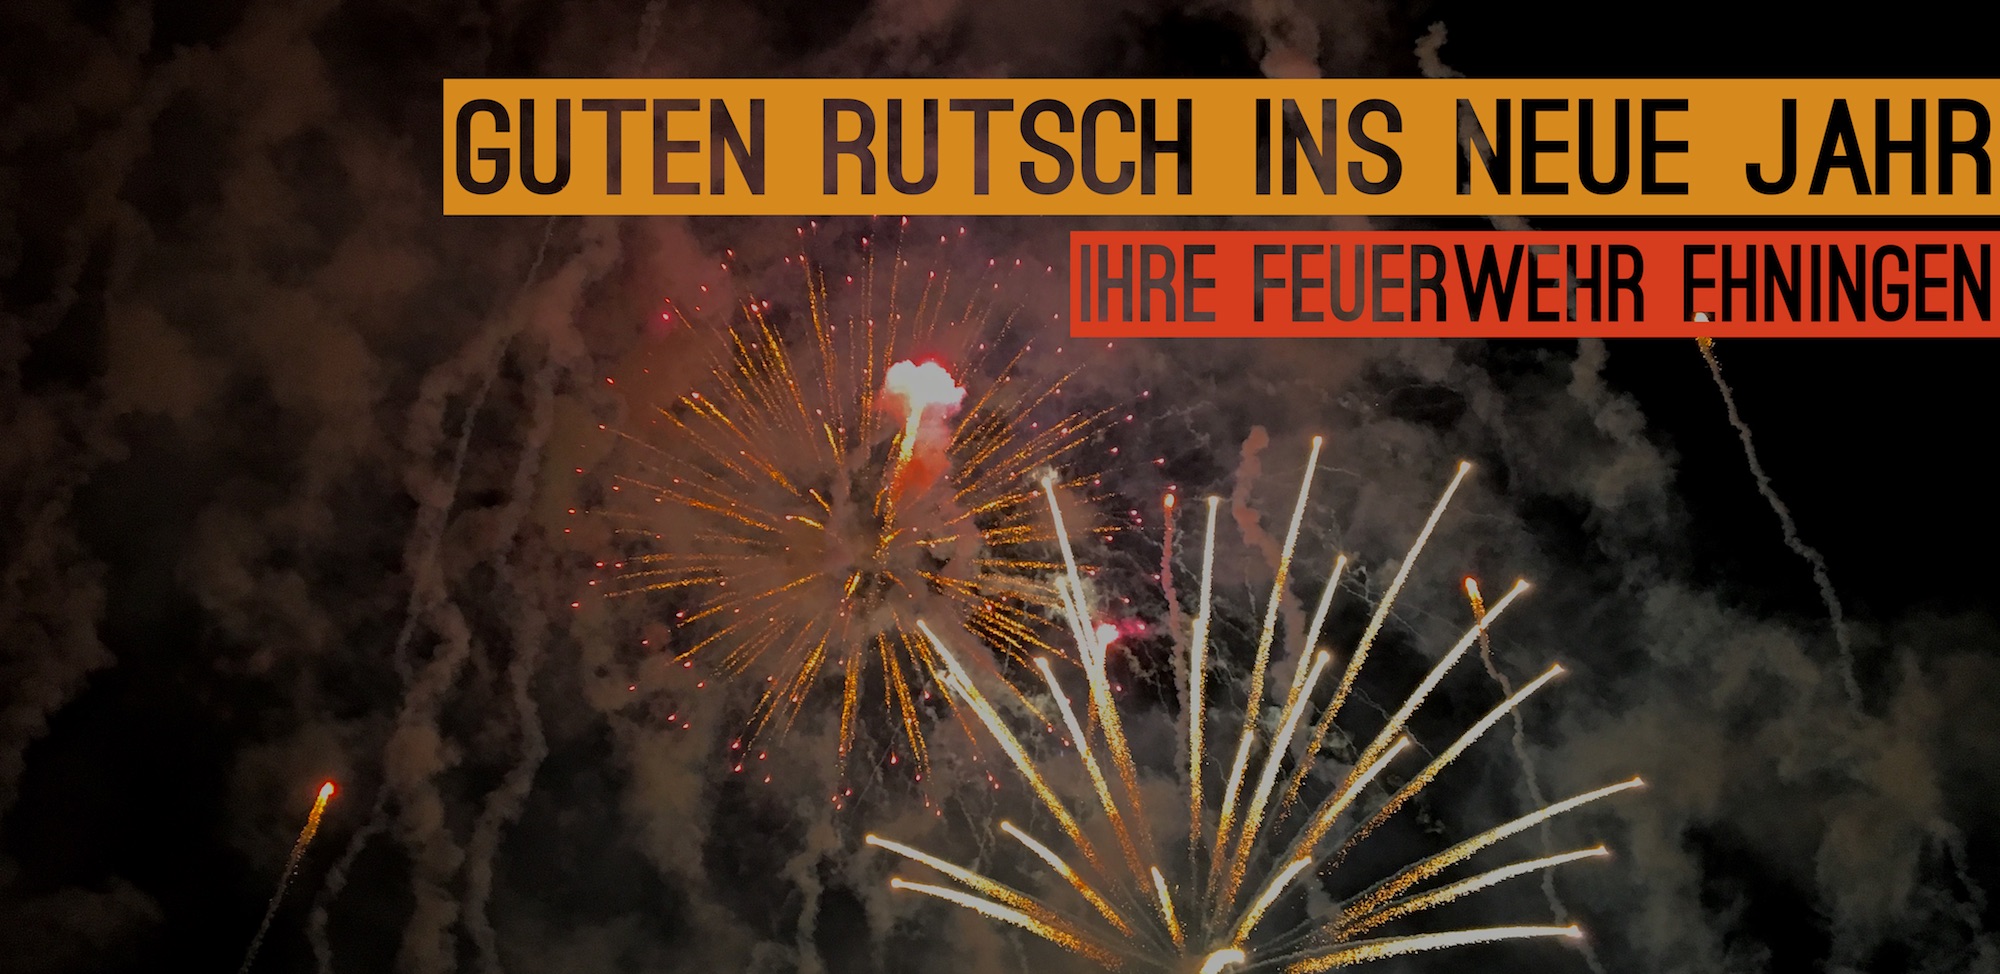 Die Feuerwehr Ehningen wünscht einen guten Rutsch ins neue Jahr